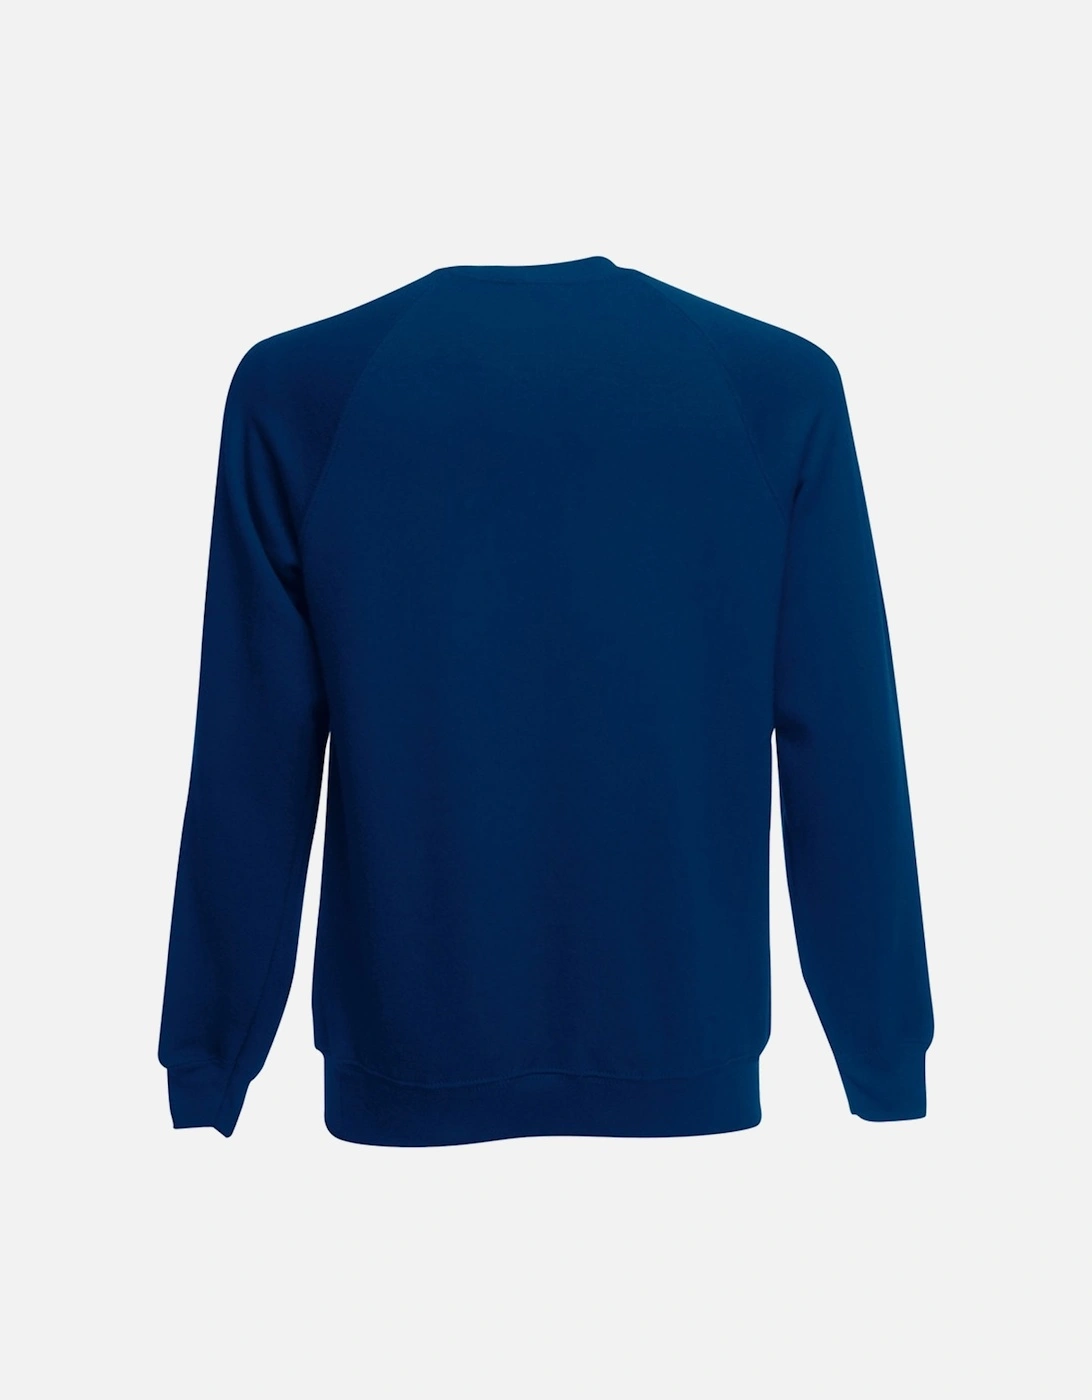 Childrens Unisex Raglan Sleeve Sweatshirt (Pack of 2)